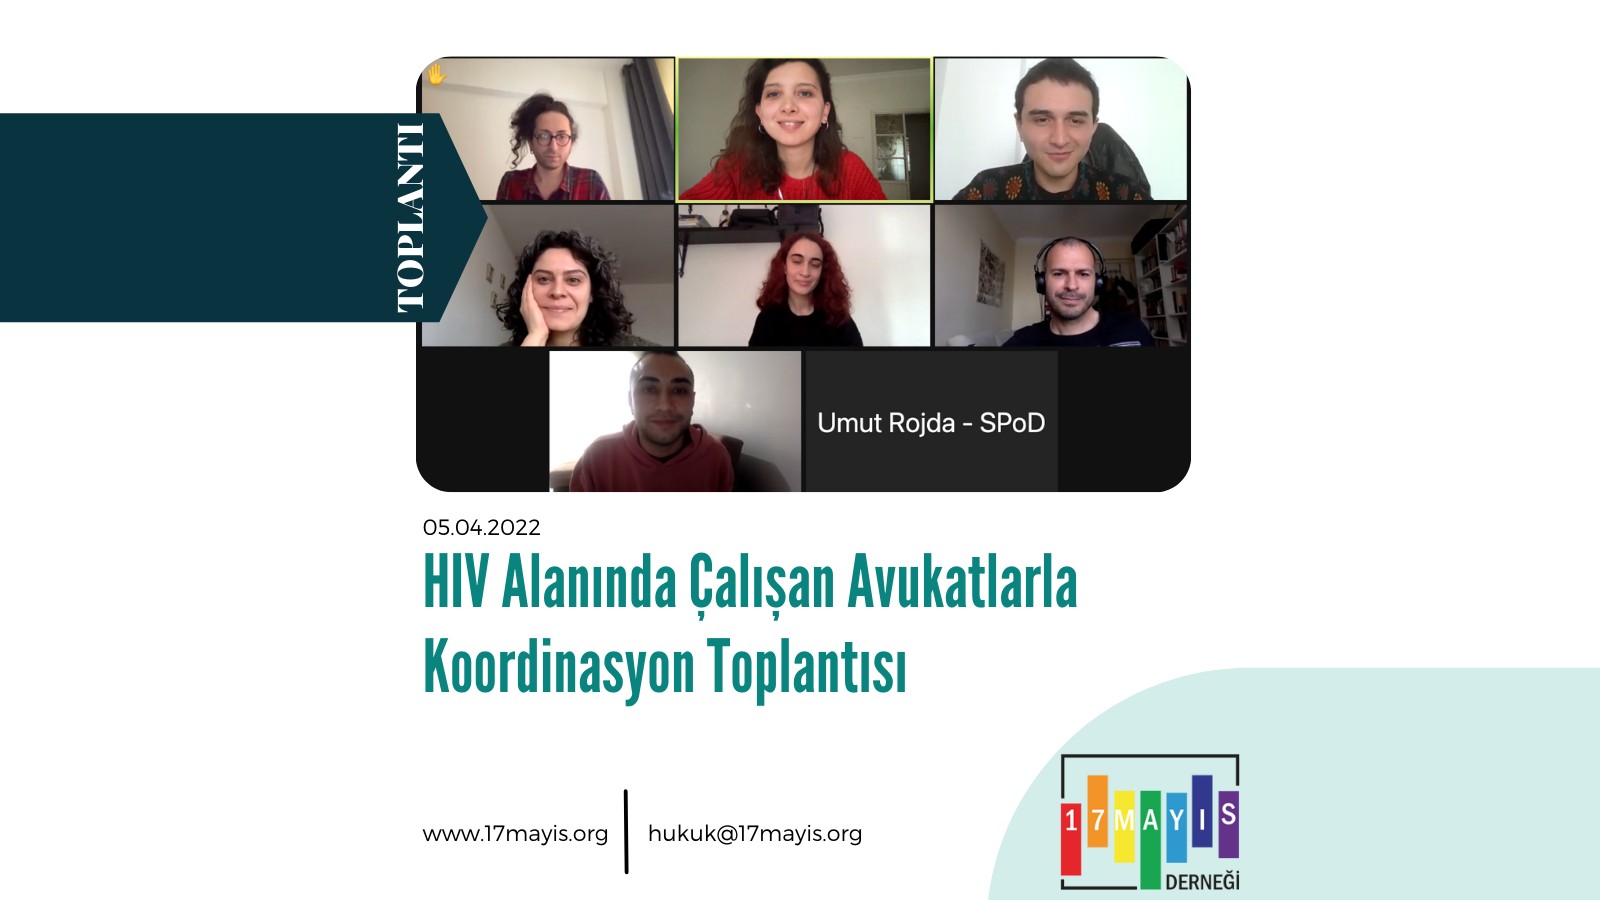 HIV Alanında Çalışan Avukatlarla Koordinasyon Toplantısı - 17 Mayıs